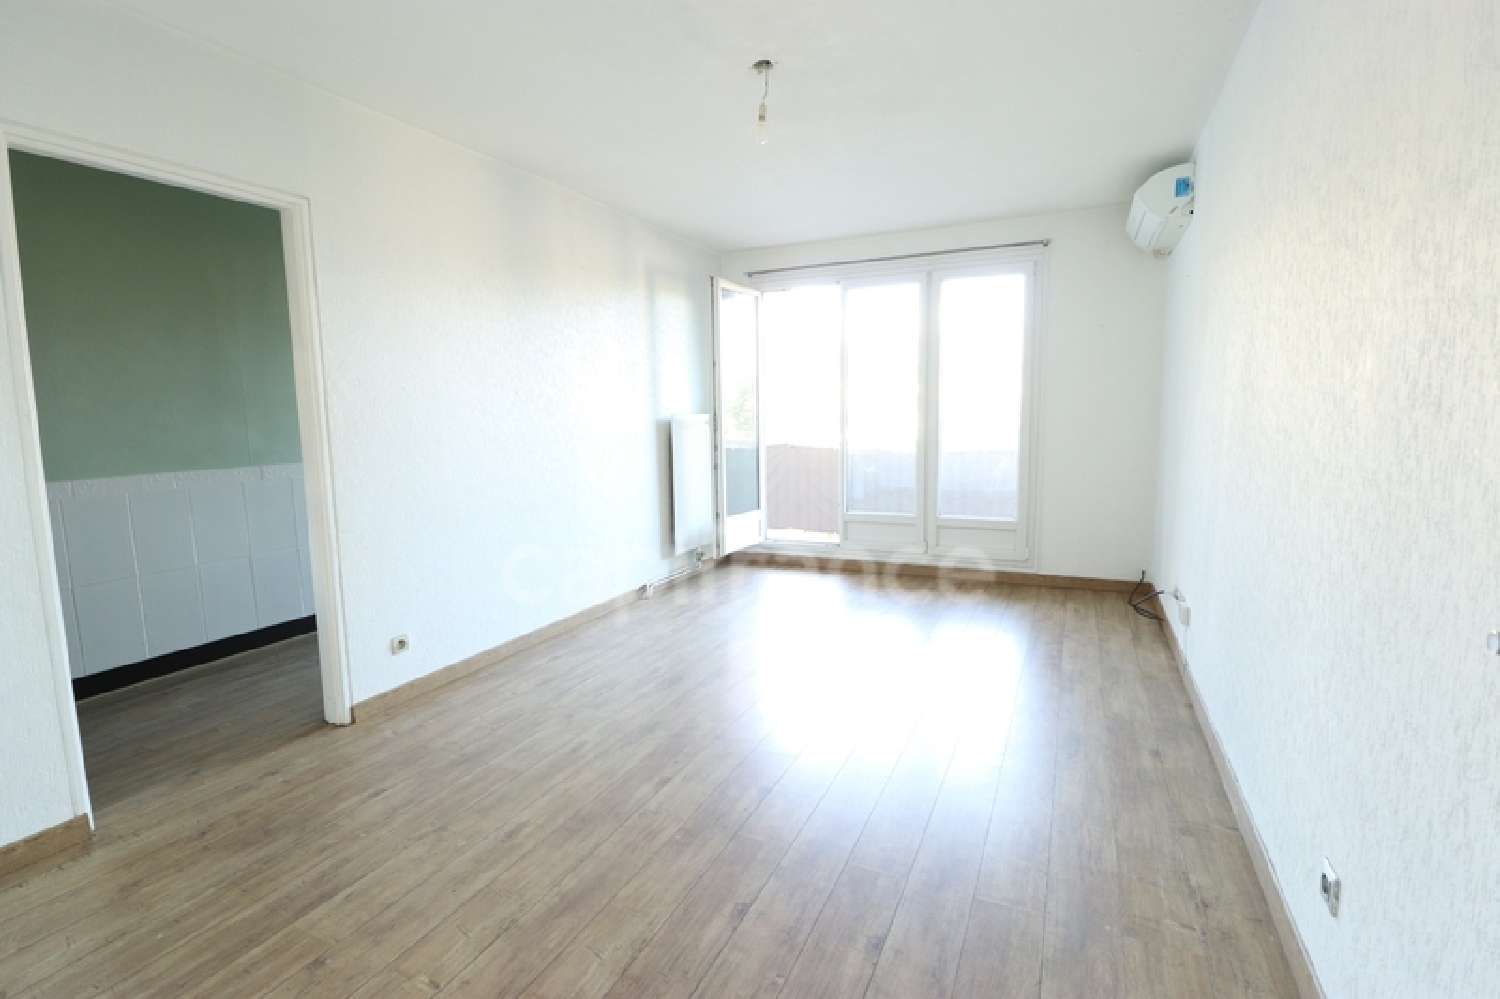  kaufen Wohnung/ Apartment Toulon 83100 Var 2